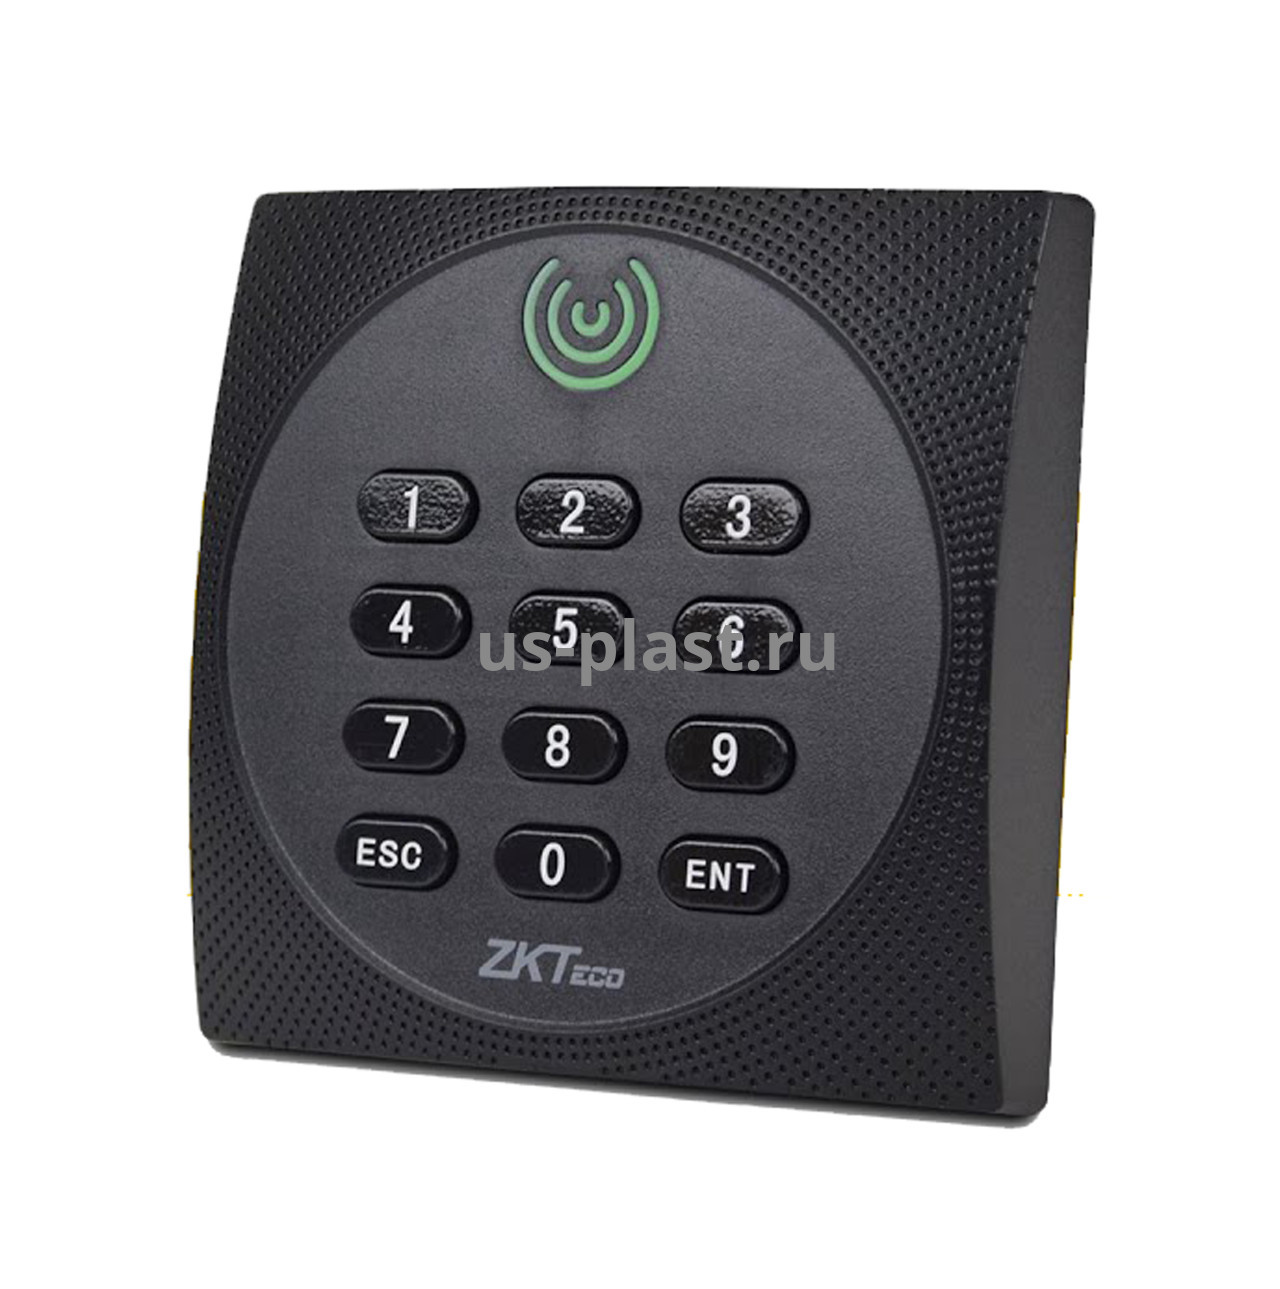 ZKTeco KR602M, считыватель карт доступа Mifare с клавиатурой. Фото N2